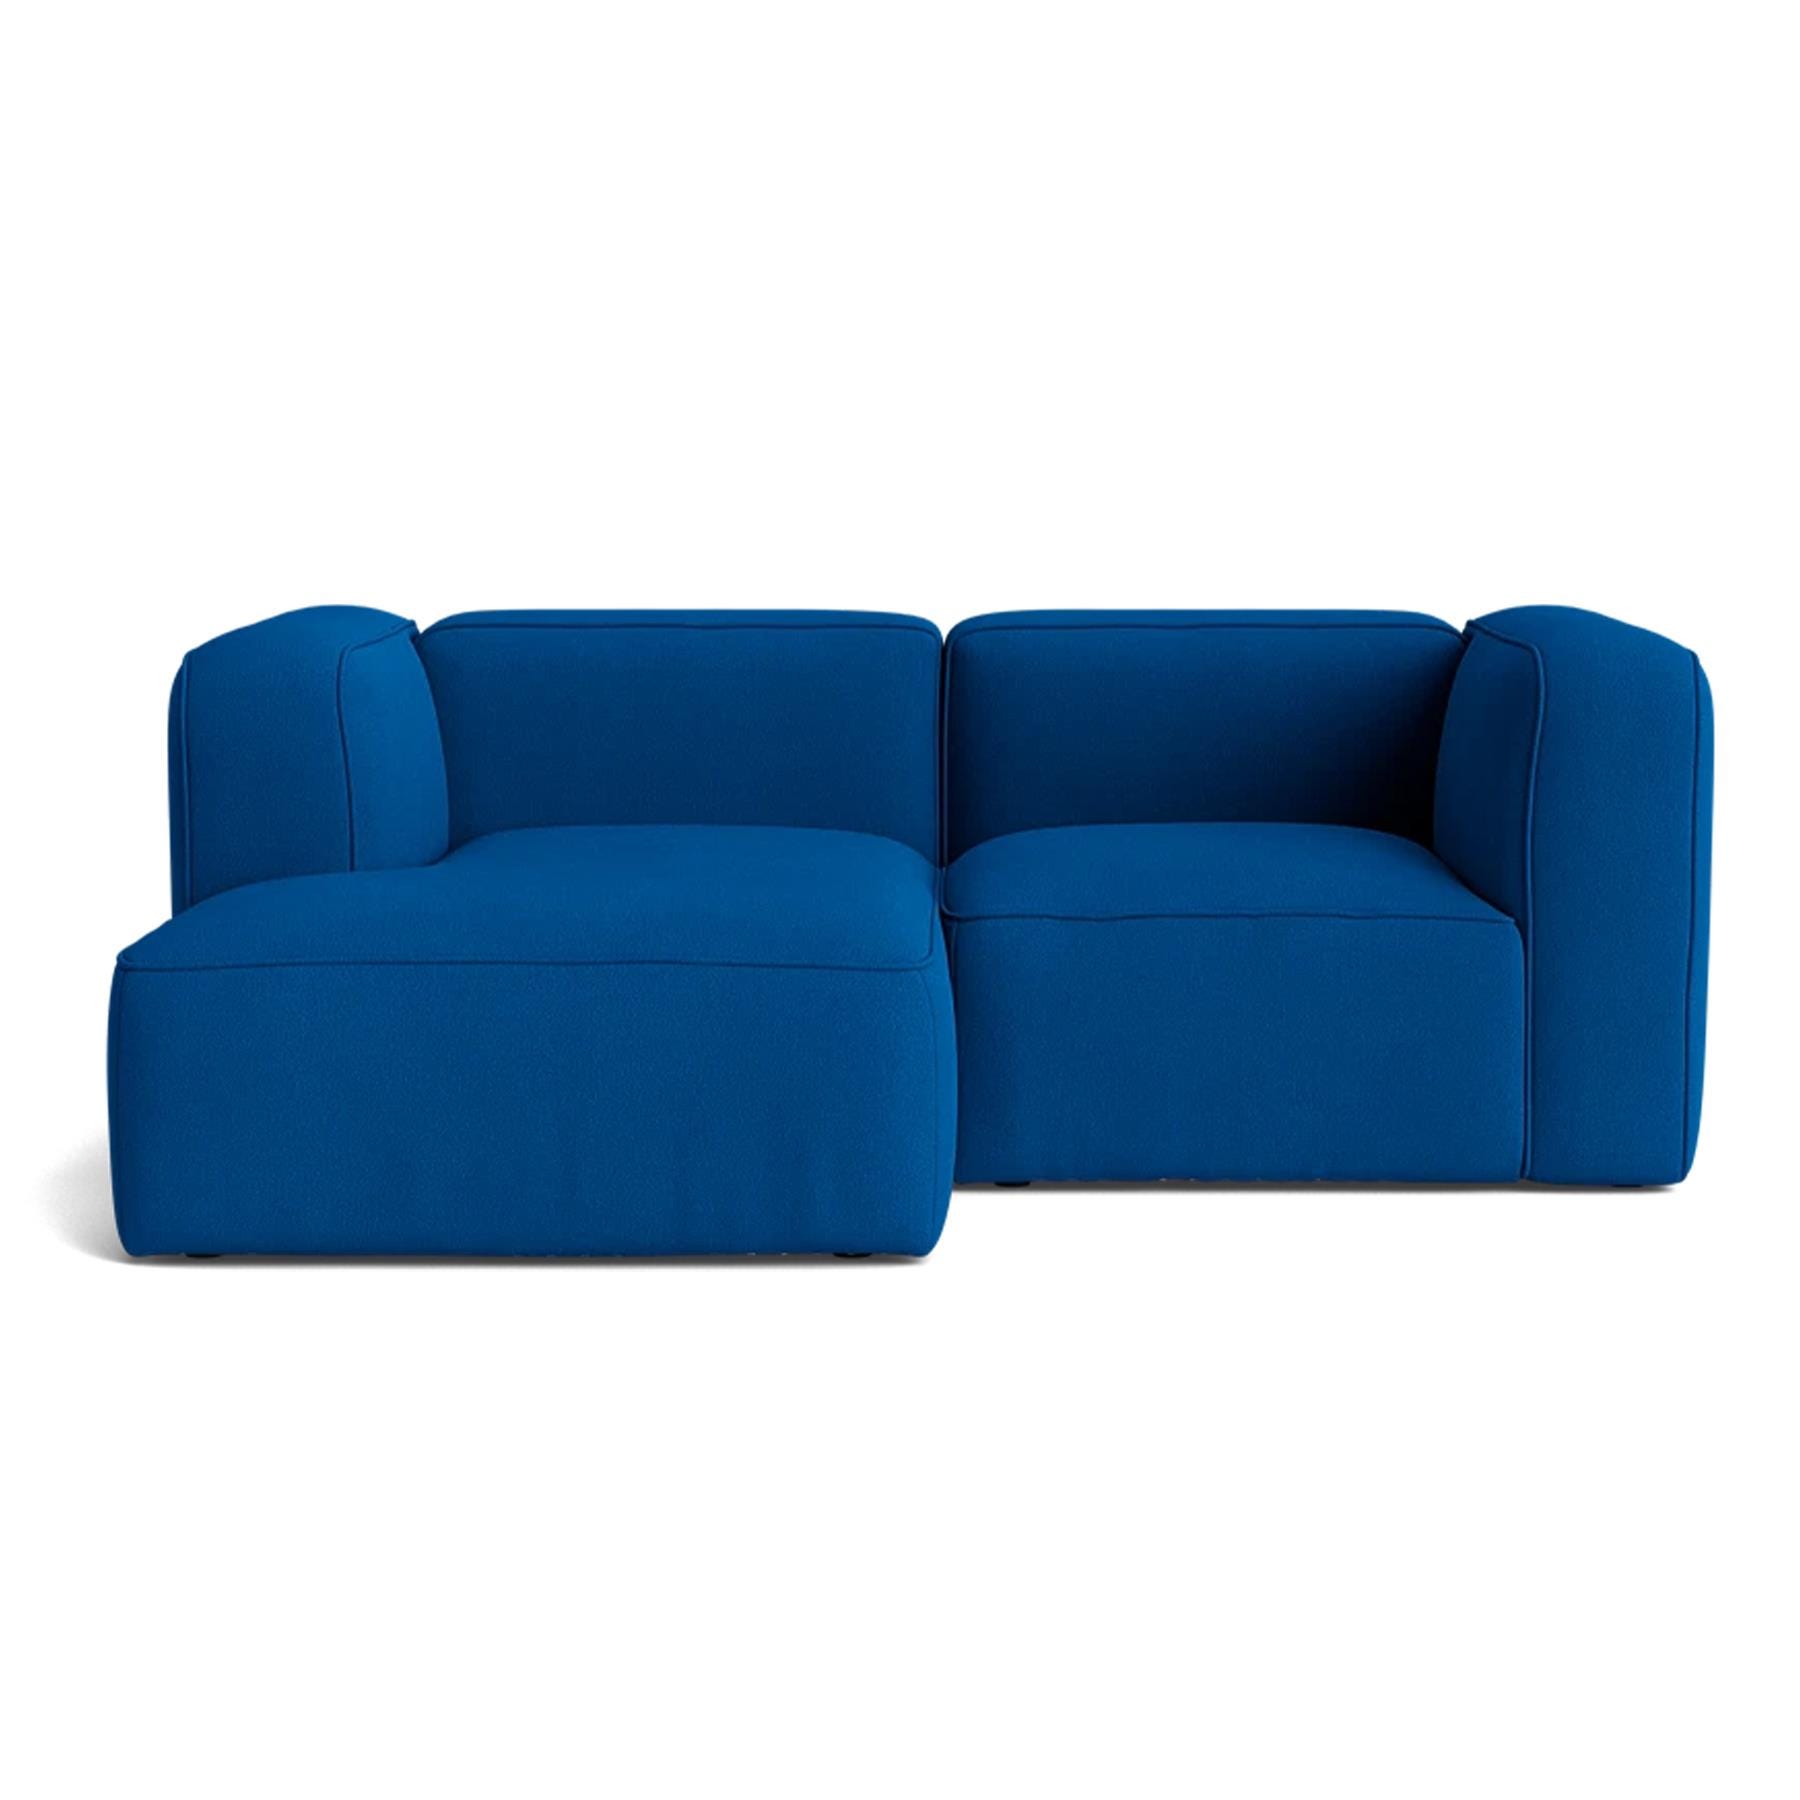 Make Nordic Basecamp Small Sofa Hallingdal 750 Left Blue Designer Furniture From Holloways Of Ludlow